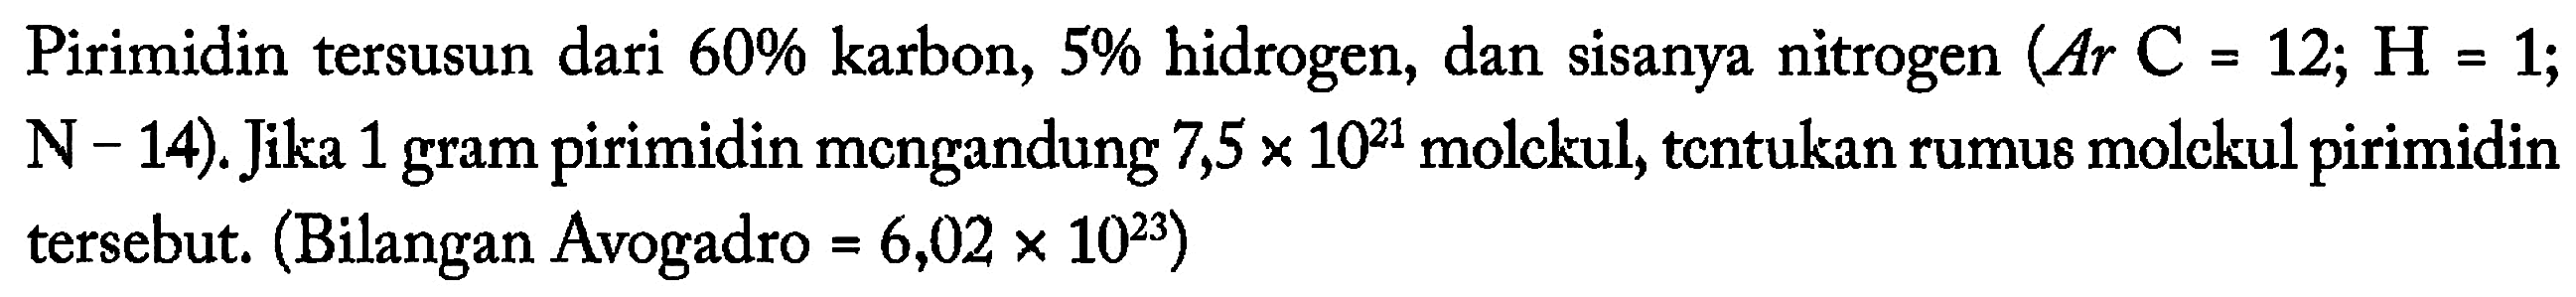 Pirimidin tersusun dari 60% karbon, 5% hidrogen, dan sisanya nitrogen (Ar C=12; H=1; N-14). Jika 1 gram pirimidin mengandung 7,5x10^21 molekul, tentukan rumus molekul pirimidin tersebut. (Bilangan Avogadro=6,02x10^23)